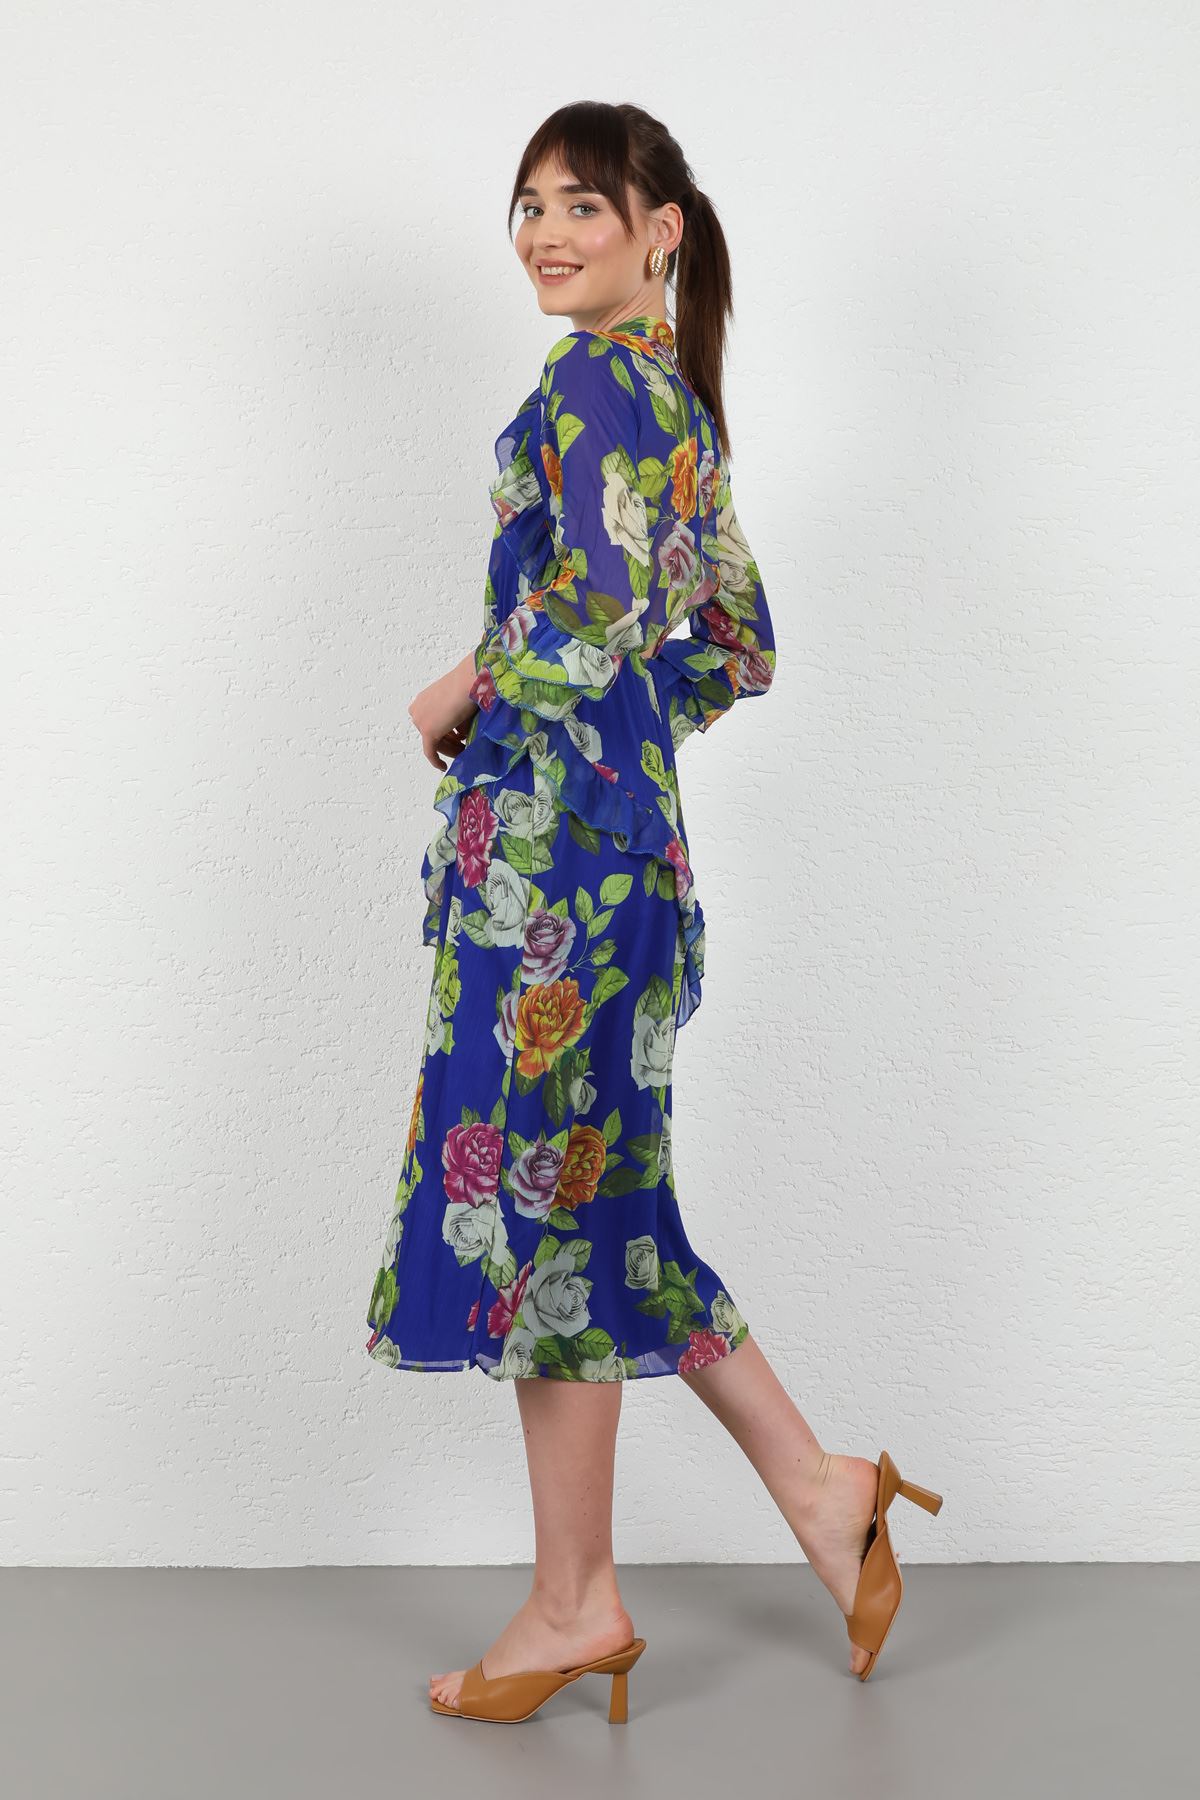 Yoryo Chiffon Fabric Sleeve Detail Long Women Dress-Royal